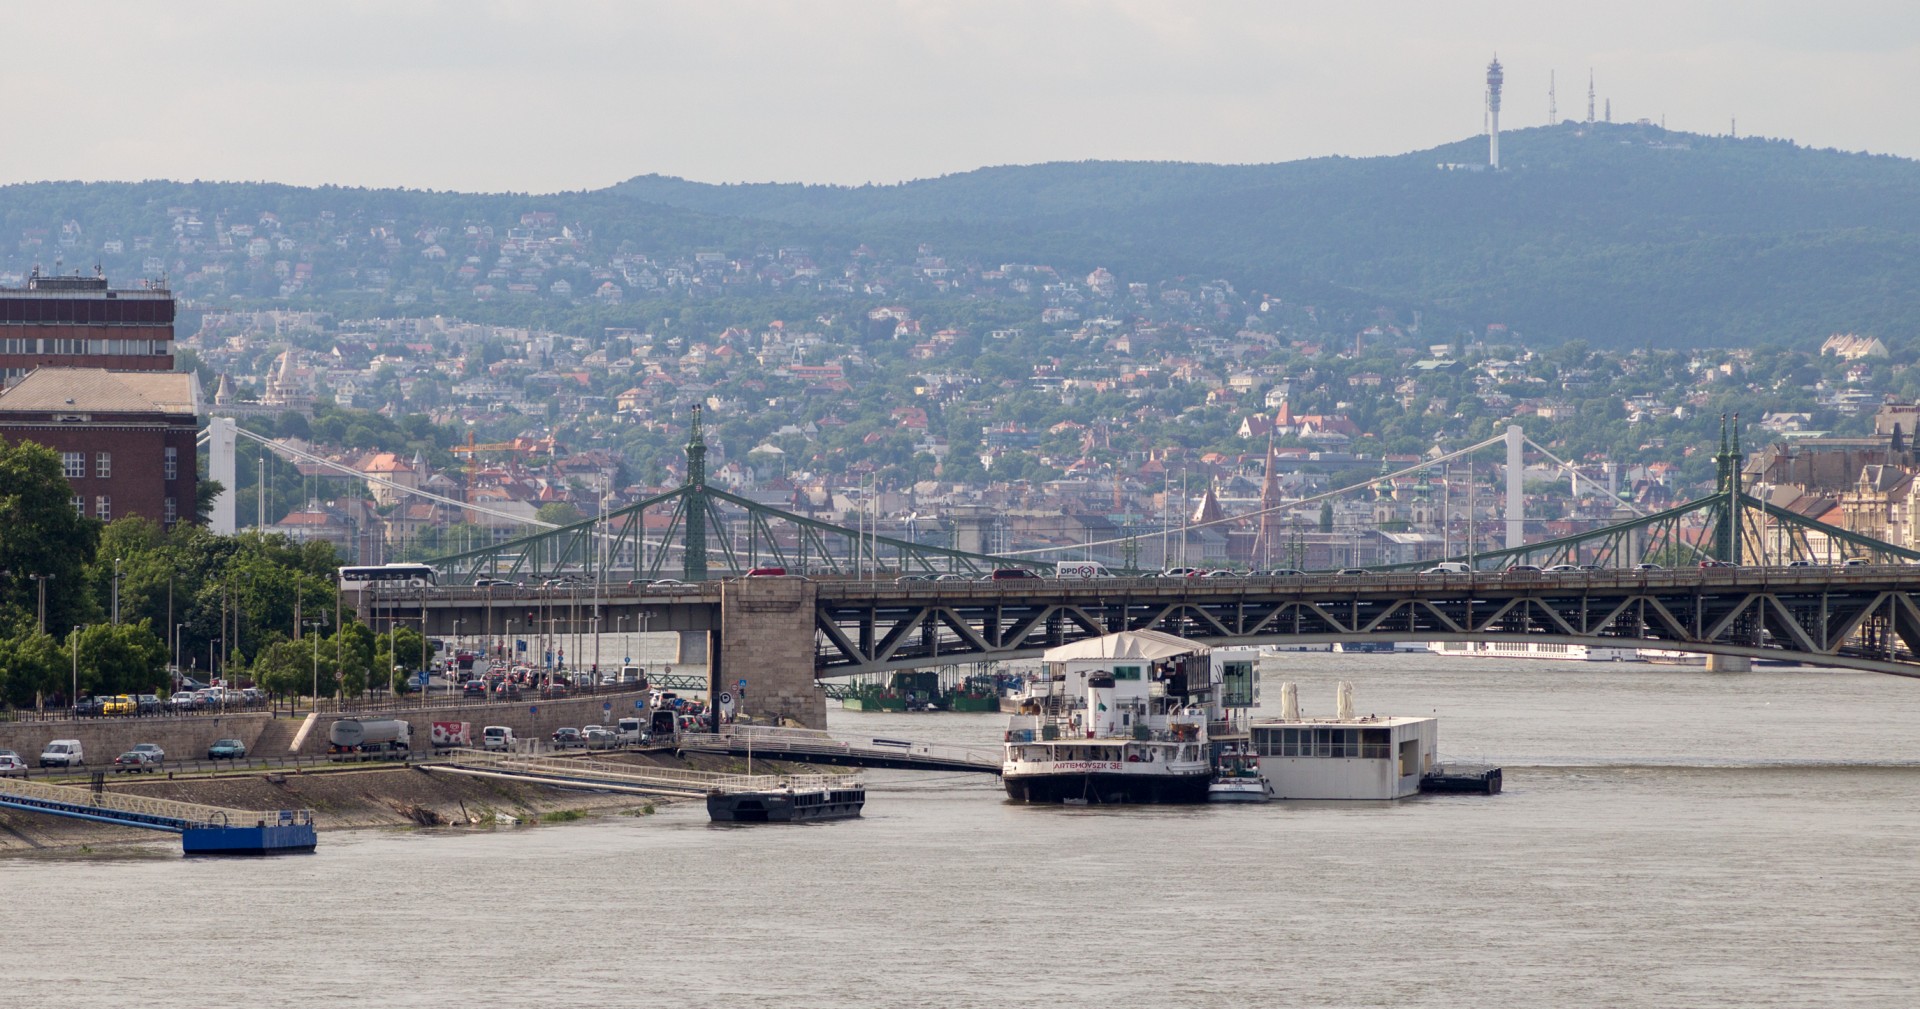 Petöfi, Szabadság und Erszebet híd von der Rakoczi hid aus gesehen